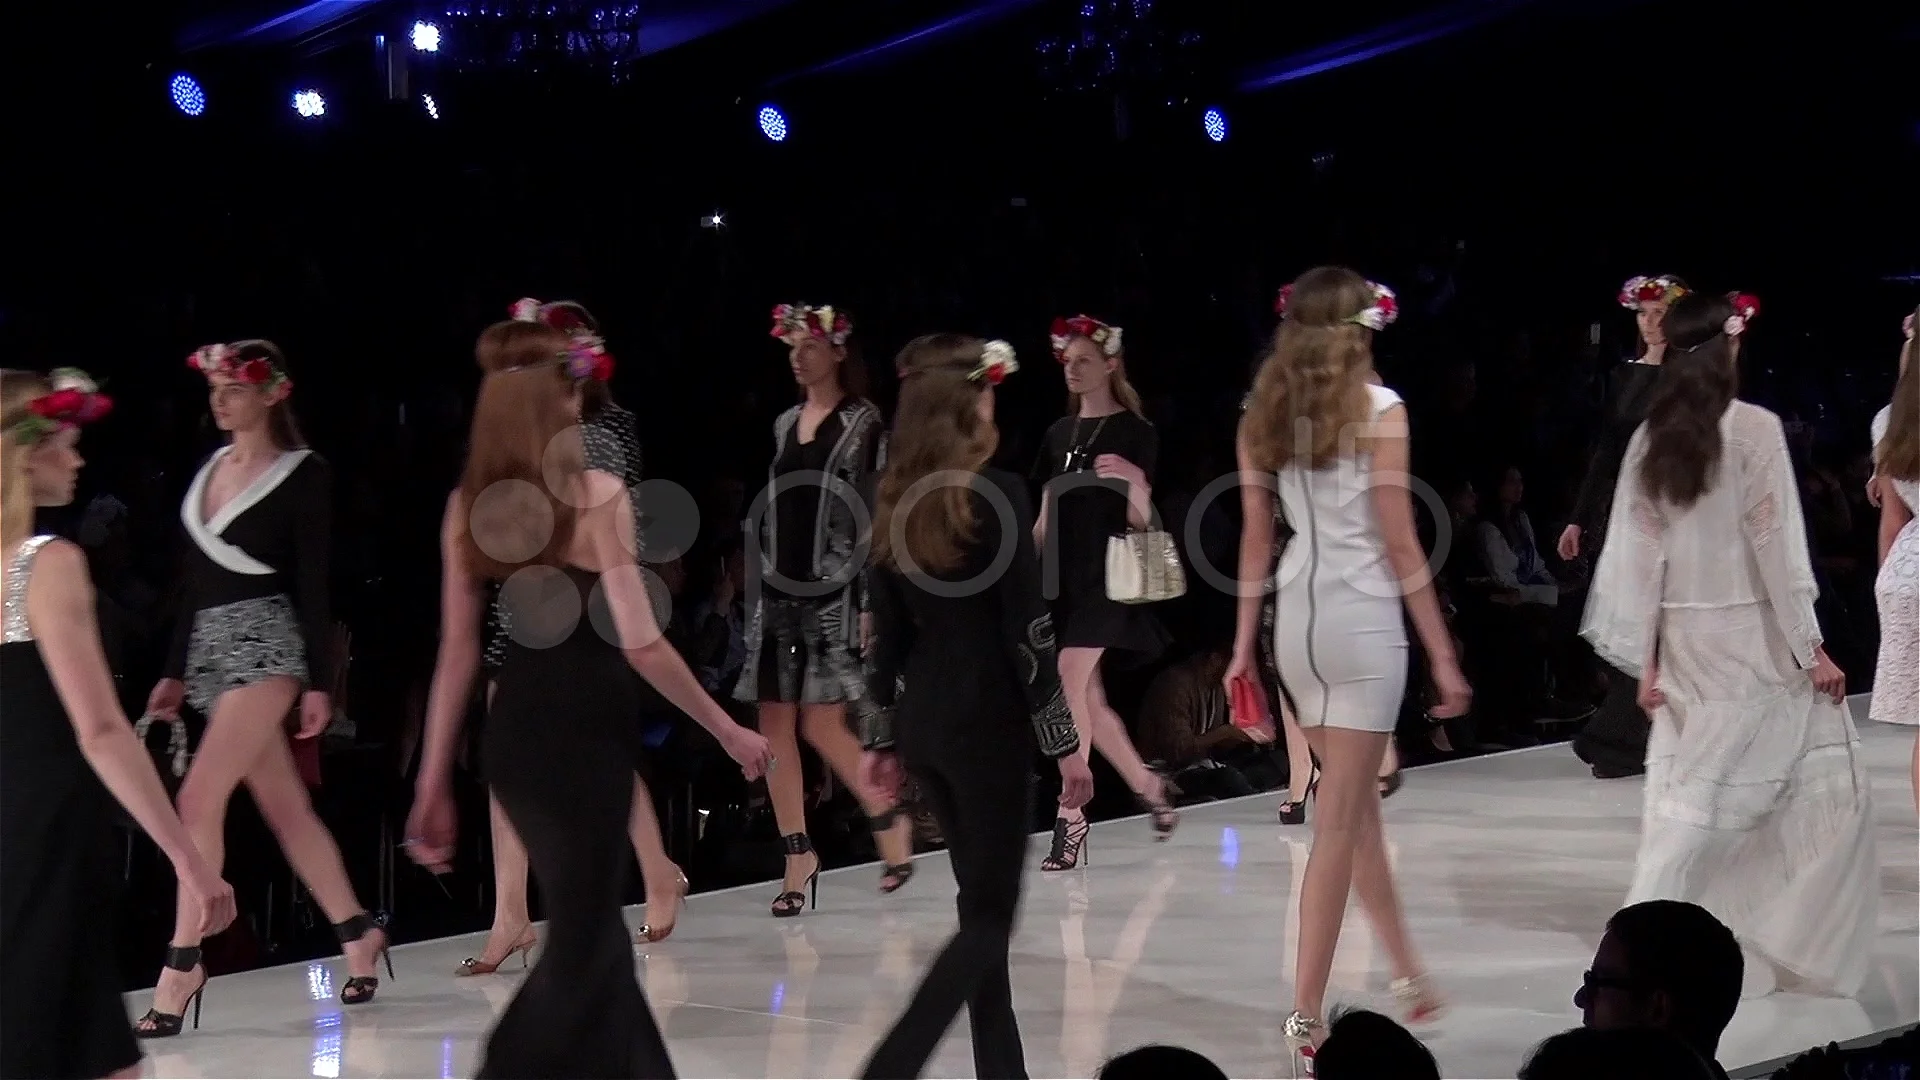 Frosset søskende Kassér sexy models Fashion show-Finale- side sh... | Stock Video | Pond5